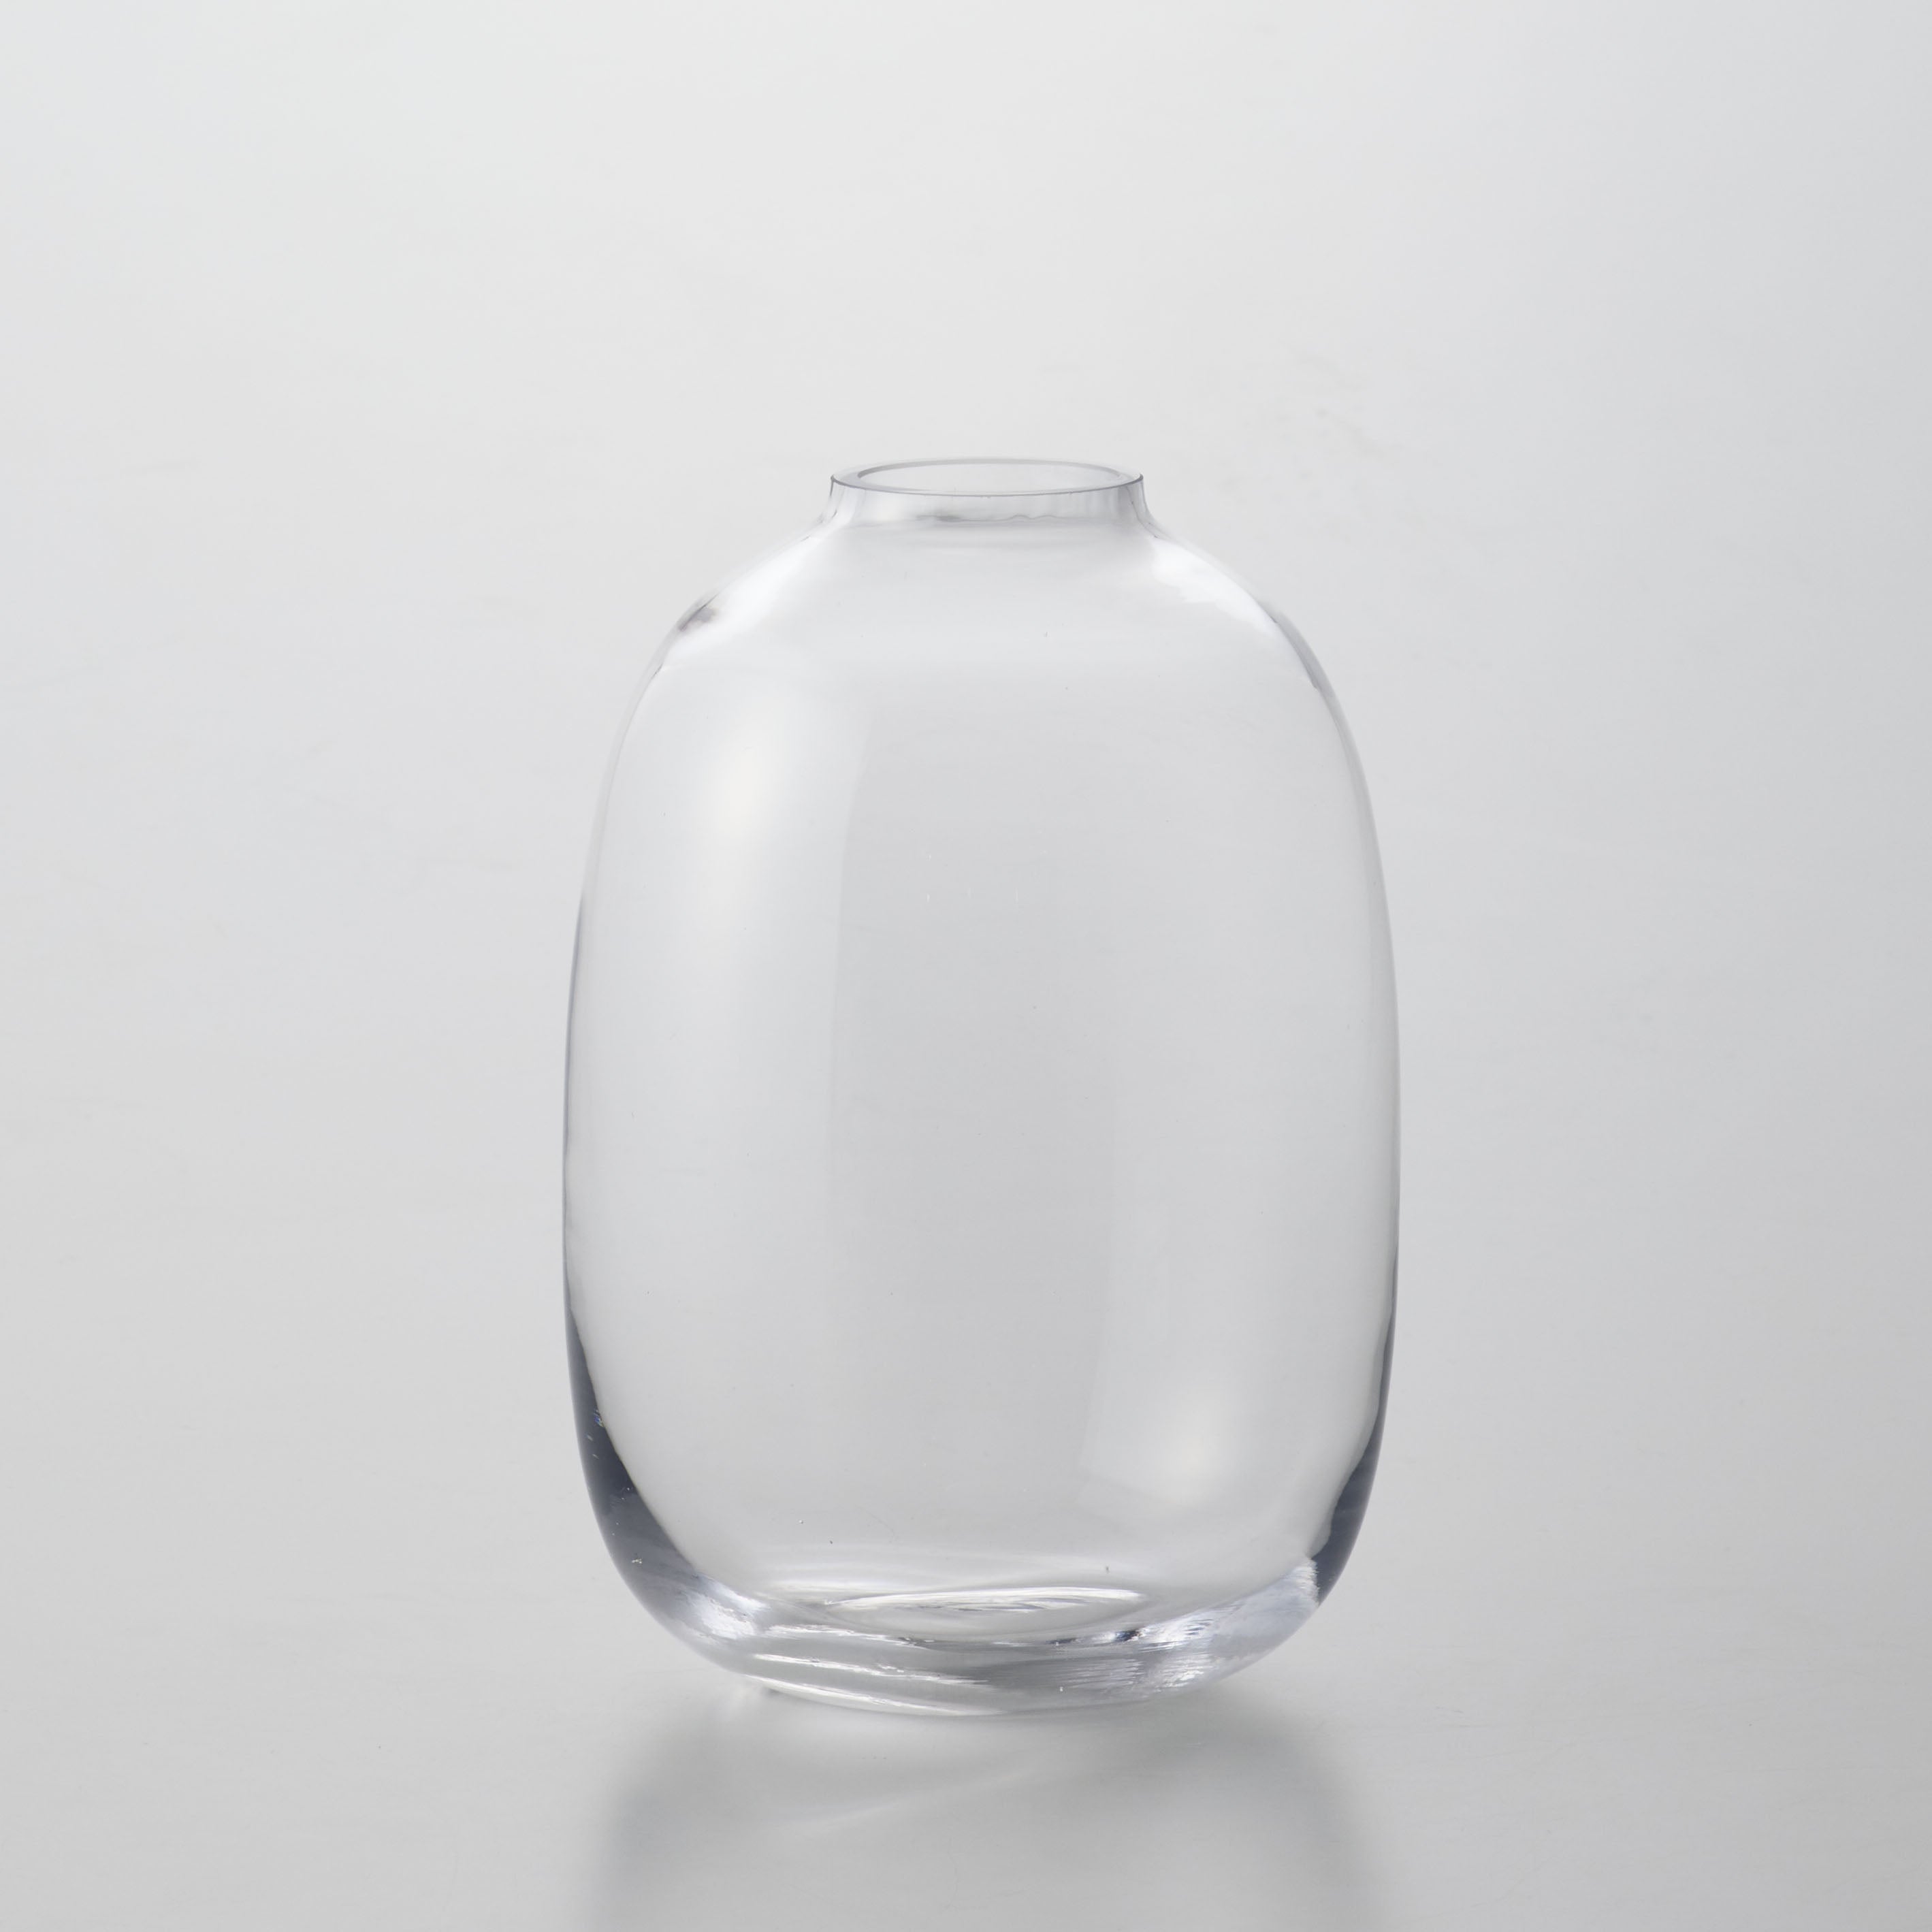 安らぎを与えてくれるゆったりとした丸いガラスの花瓶【Ballon - バロン】